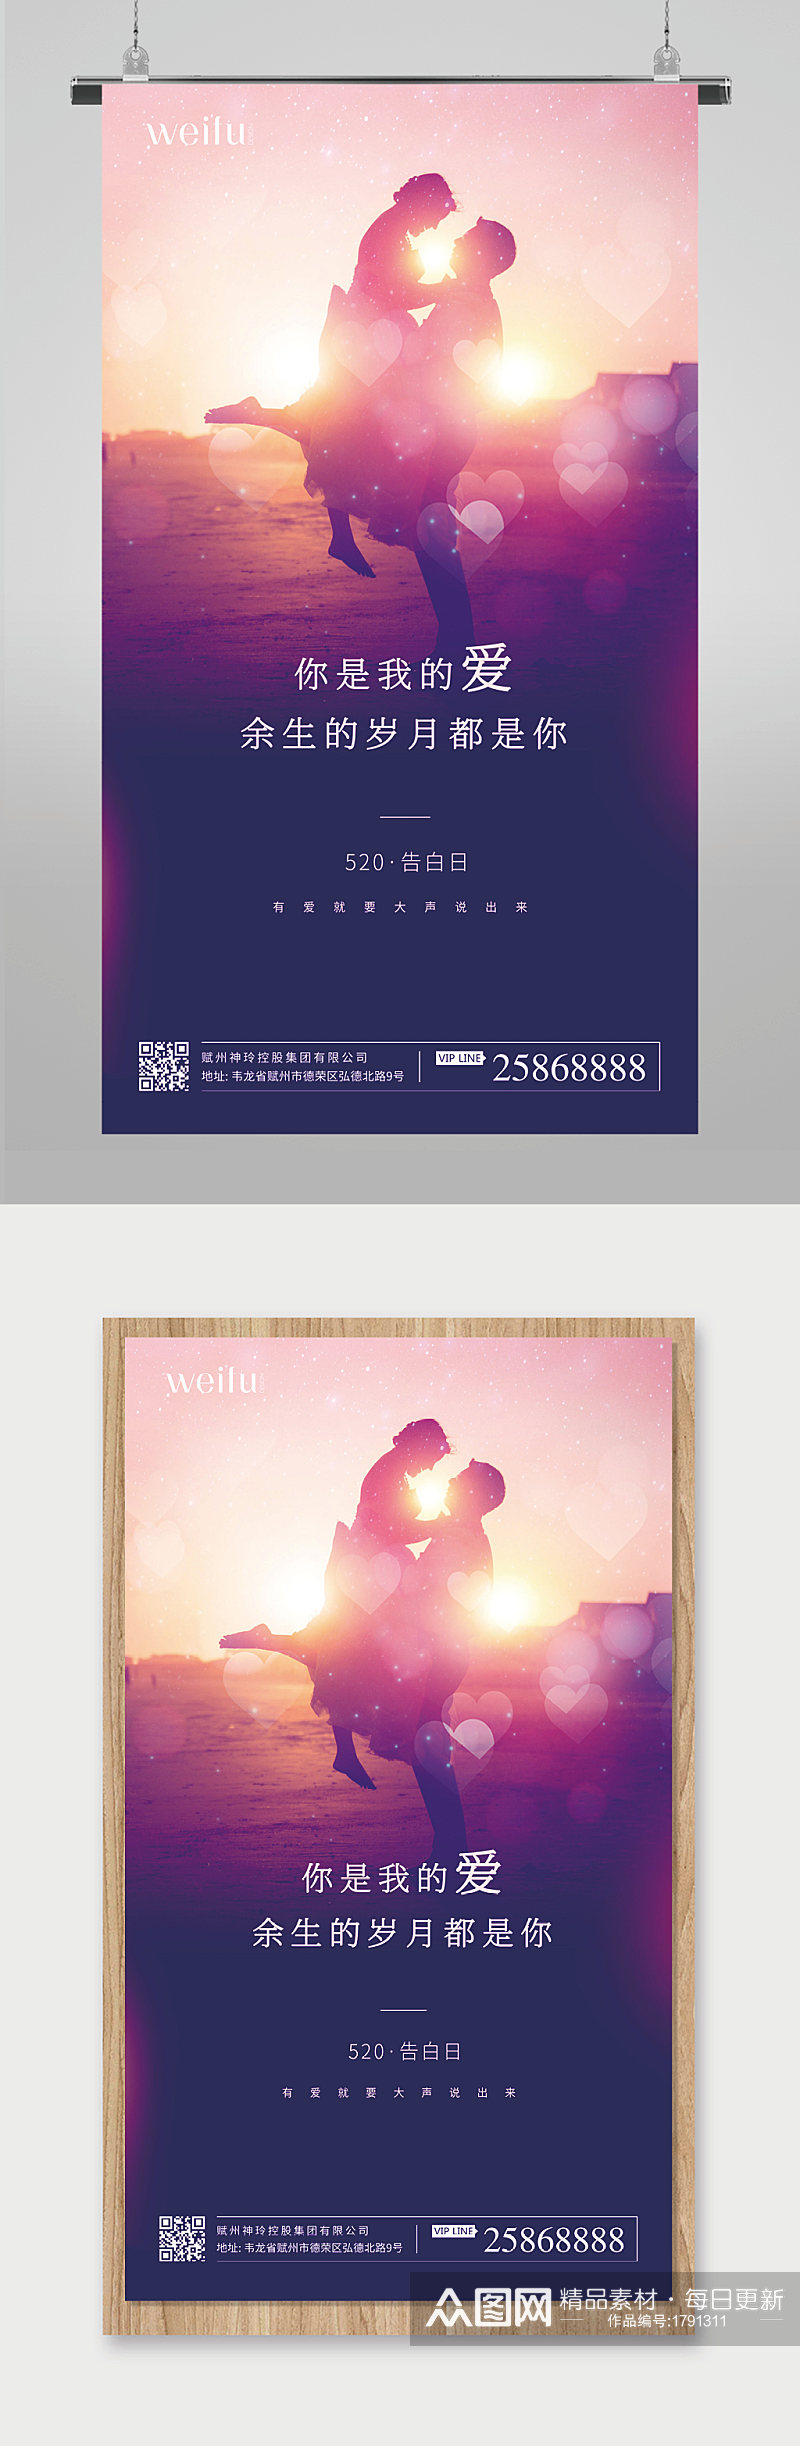 紫色大气520情人节海报素材